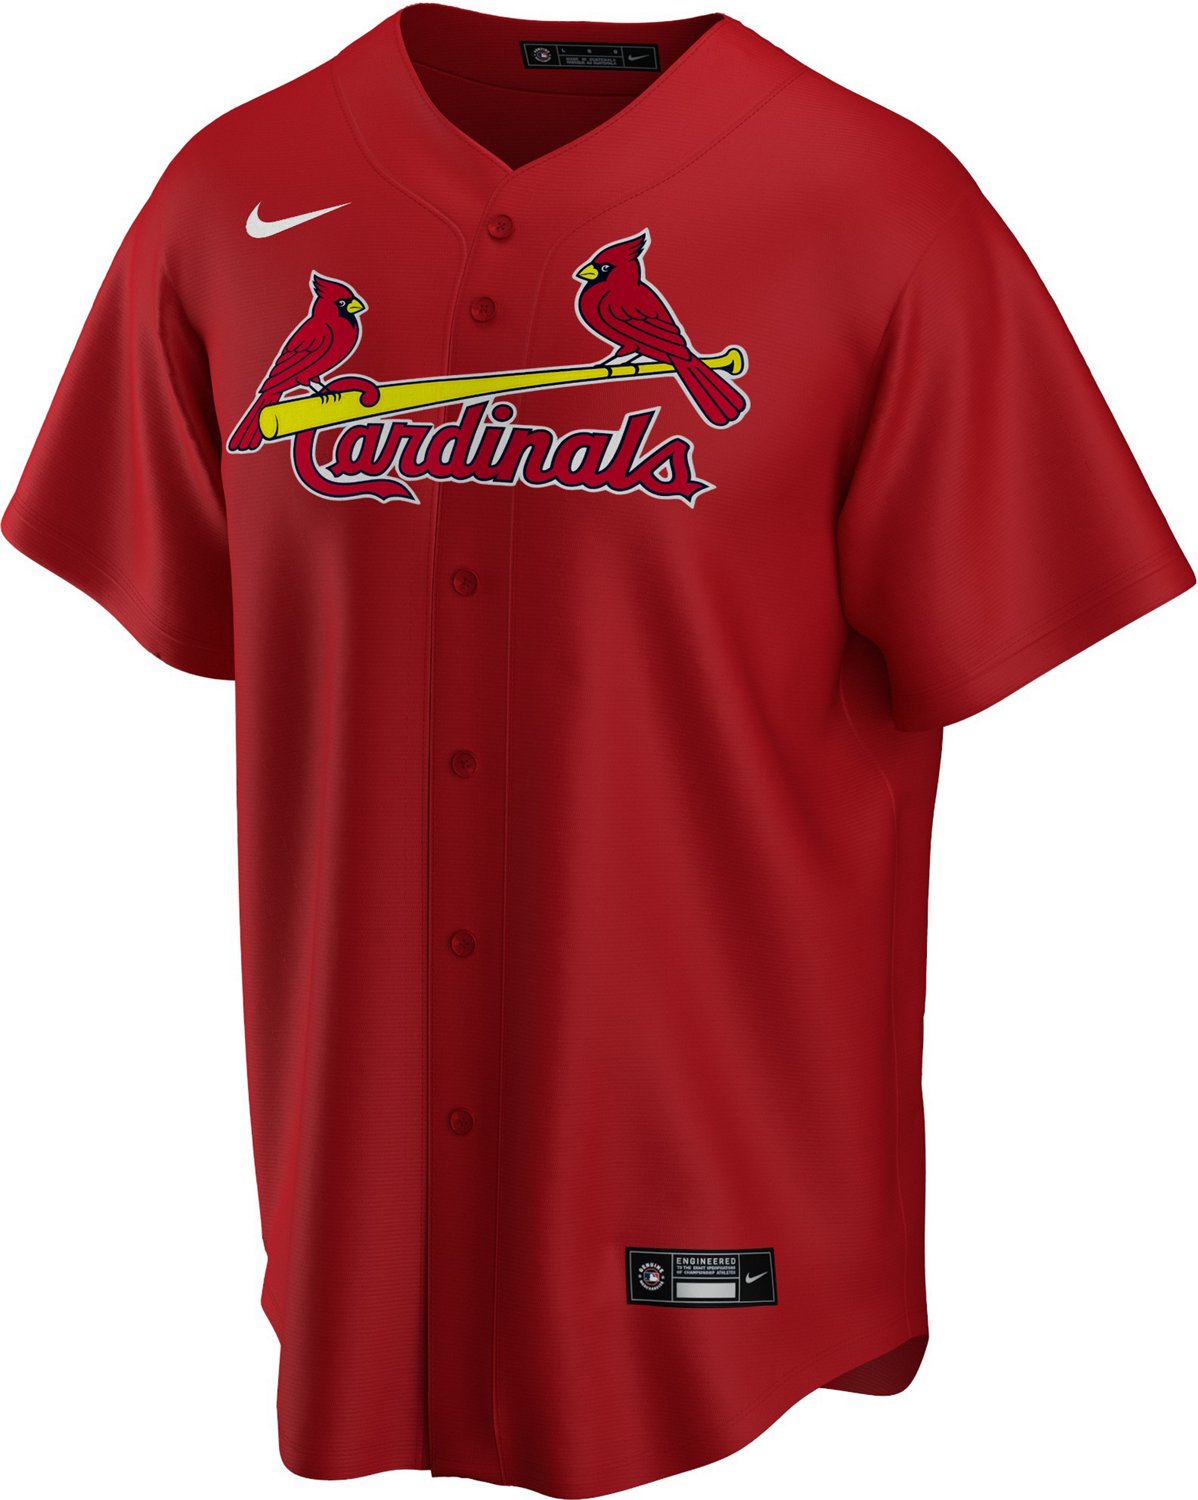 MLB St. Louis Cardinals (Paul Goldschmidt) Men's Replica Baseball Jersey